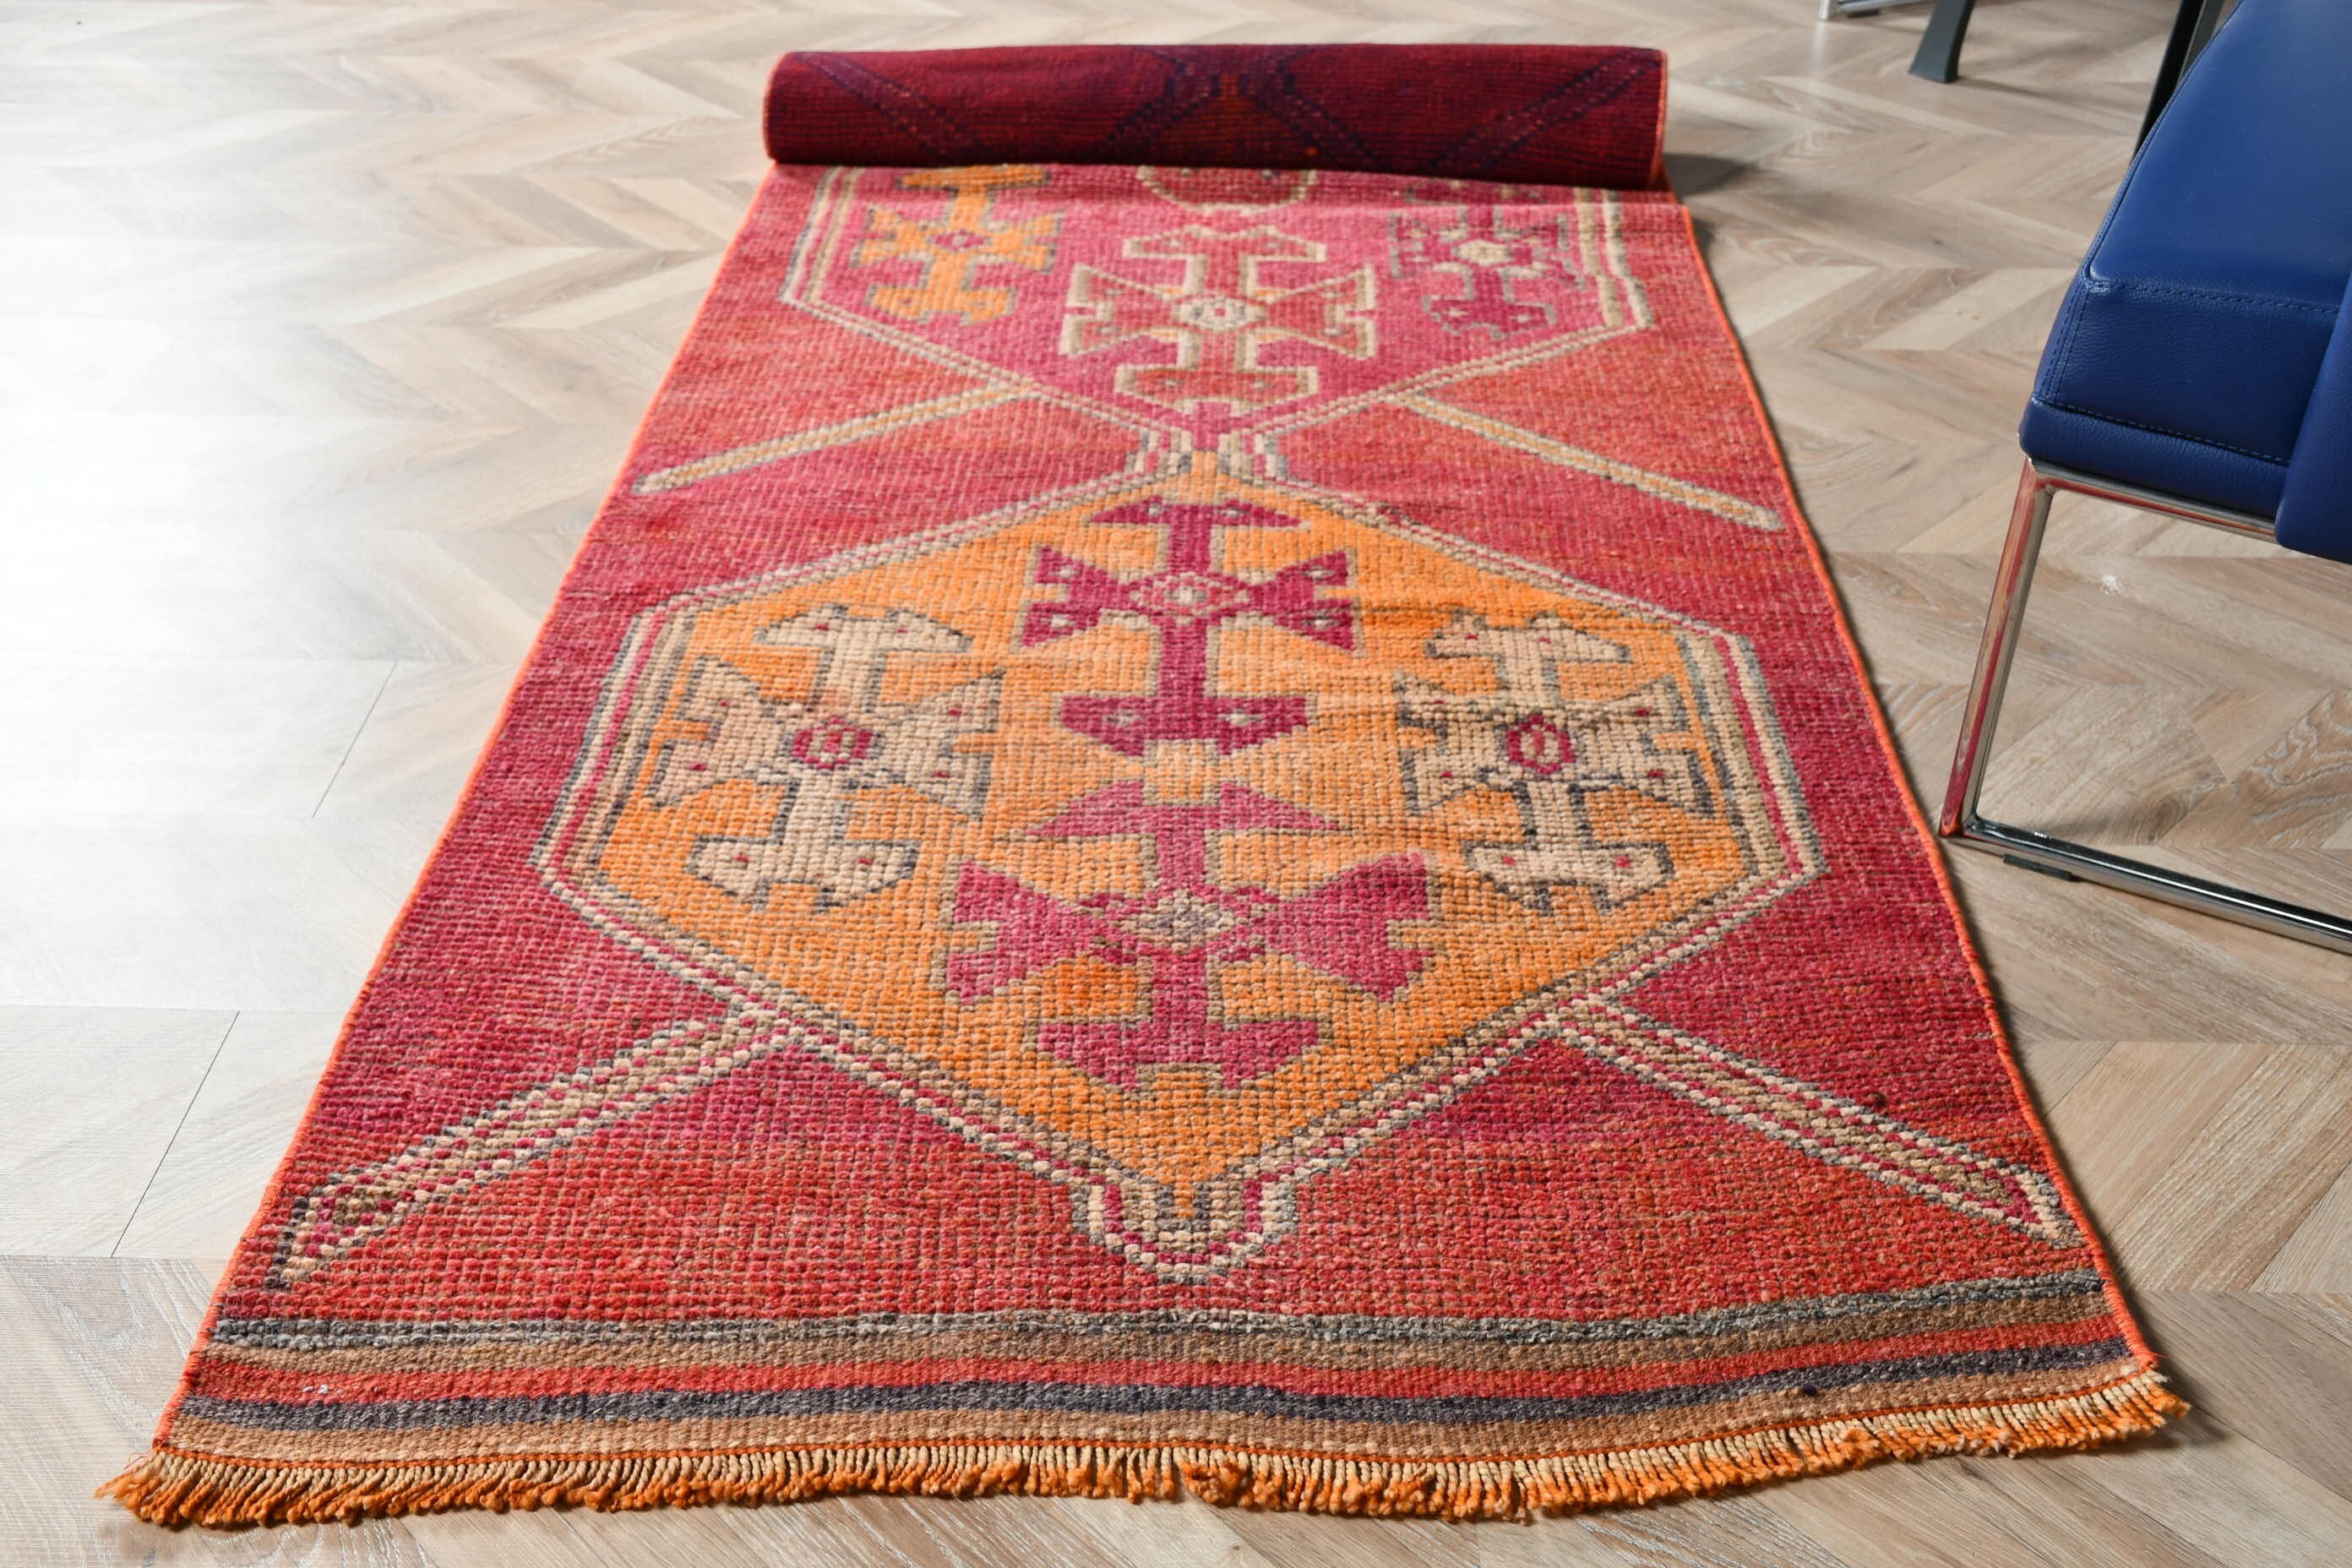 Turkish Rug, Cool Rug, Moroccan Rug, Rugs for Hallway, Pink Home Decor Rug, Floor Rug, Corridor Rugs, 2.7x10.5 ft Runner Rugs, Vintage Rugs